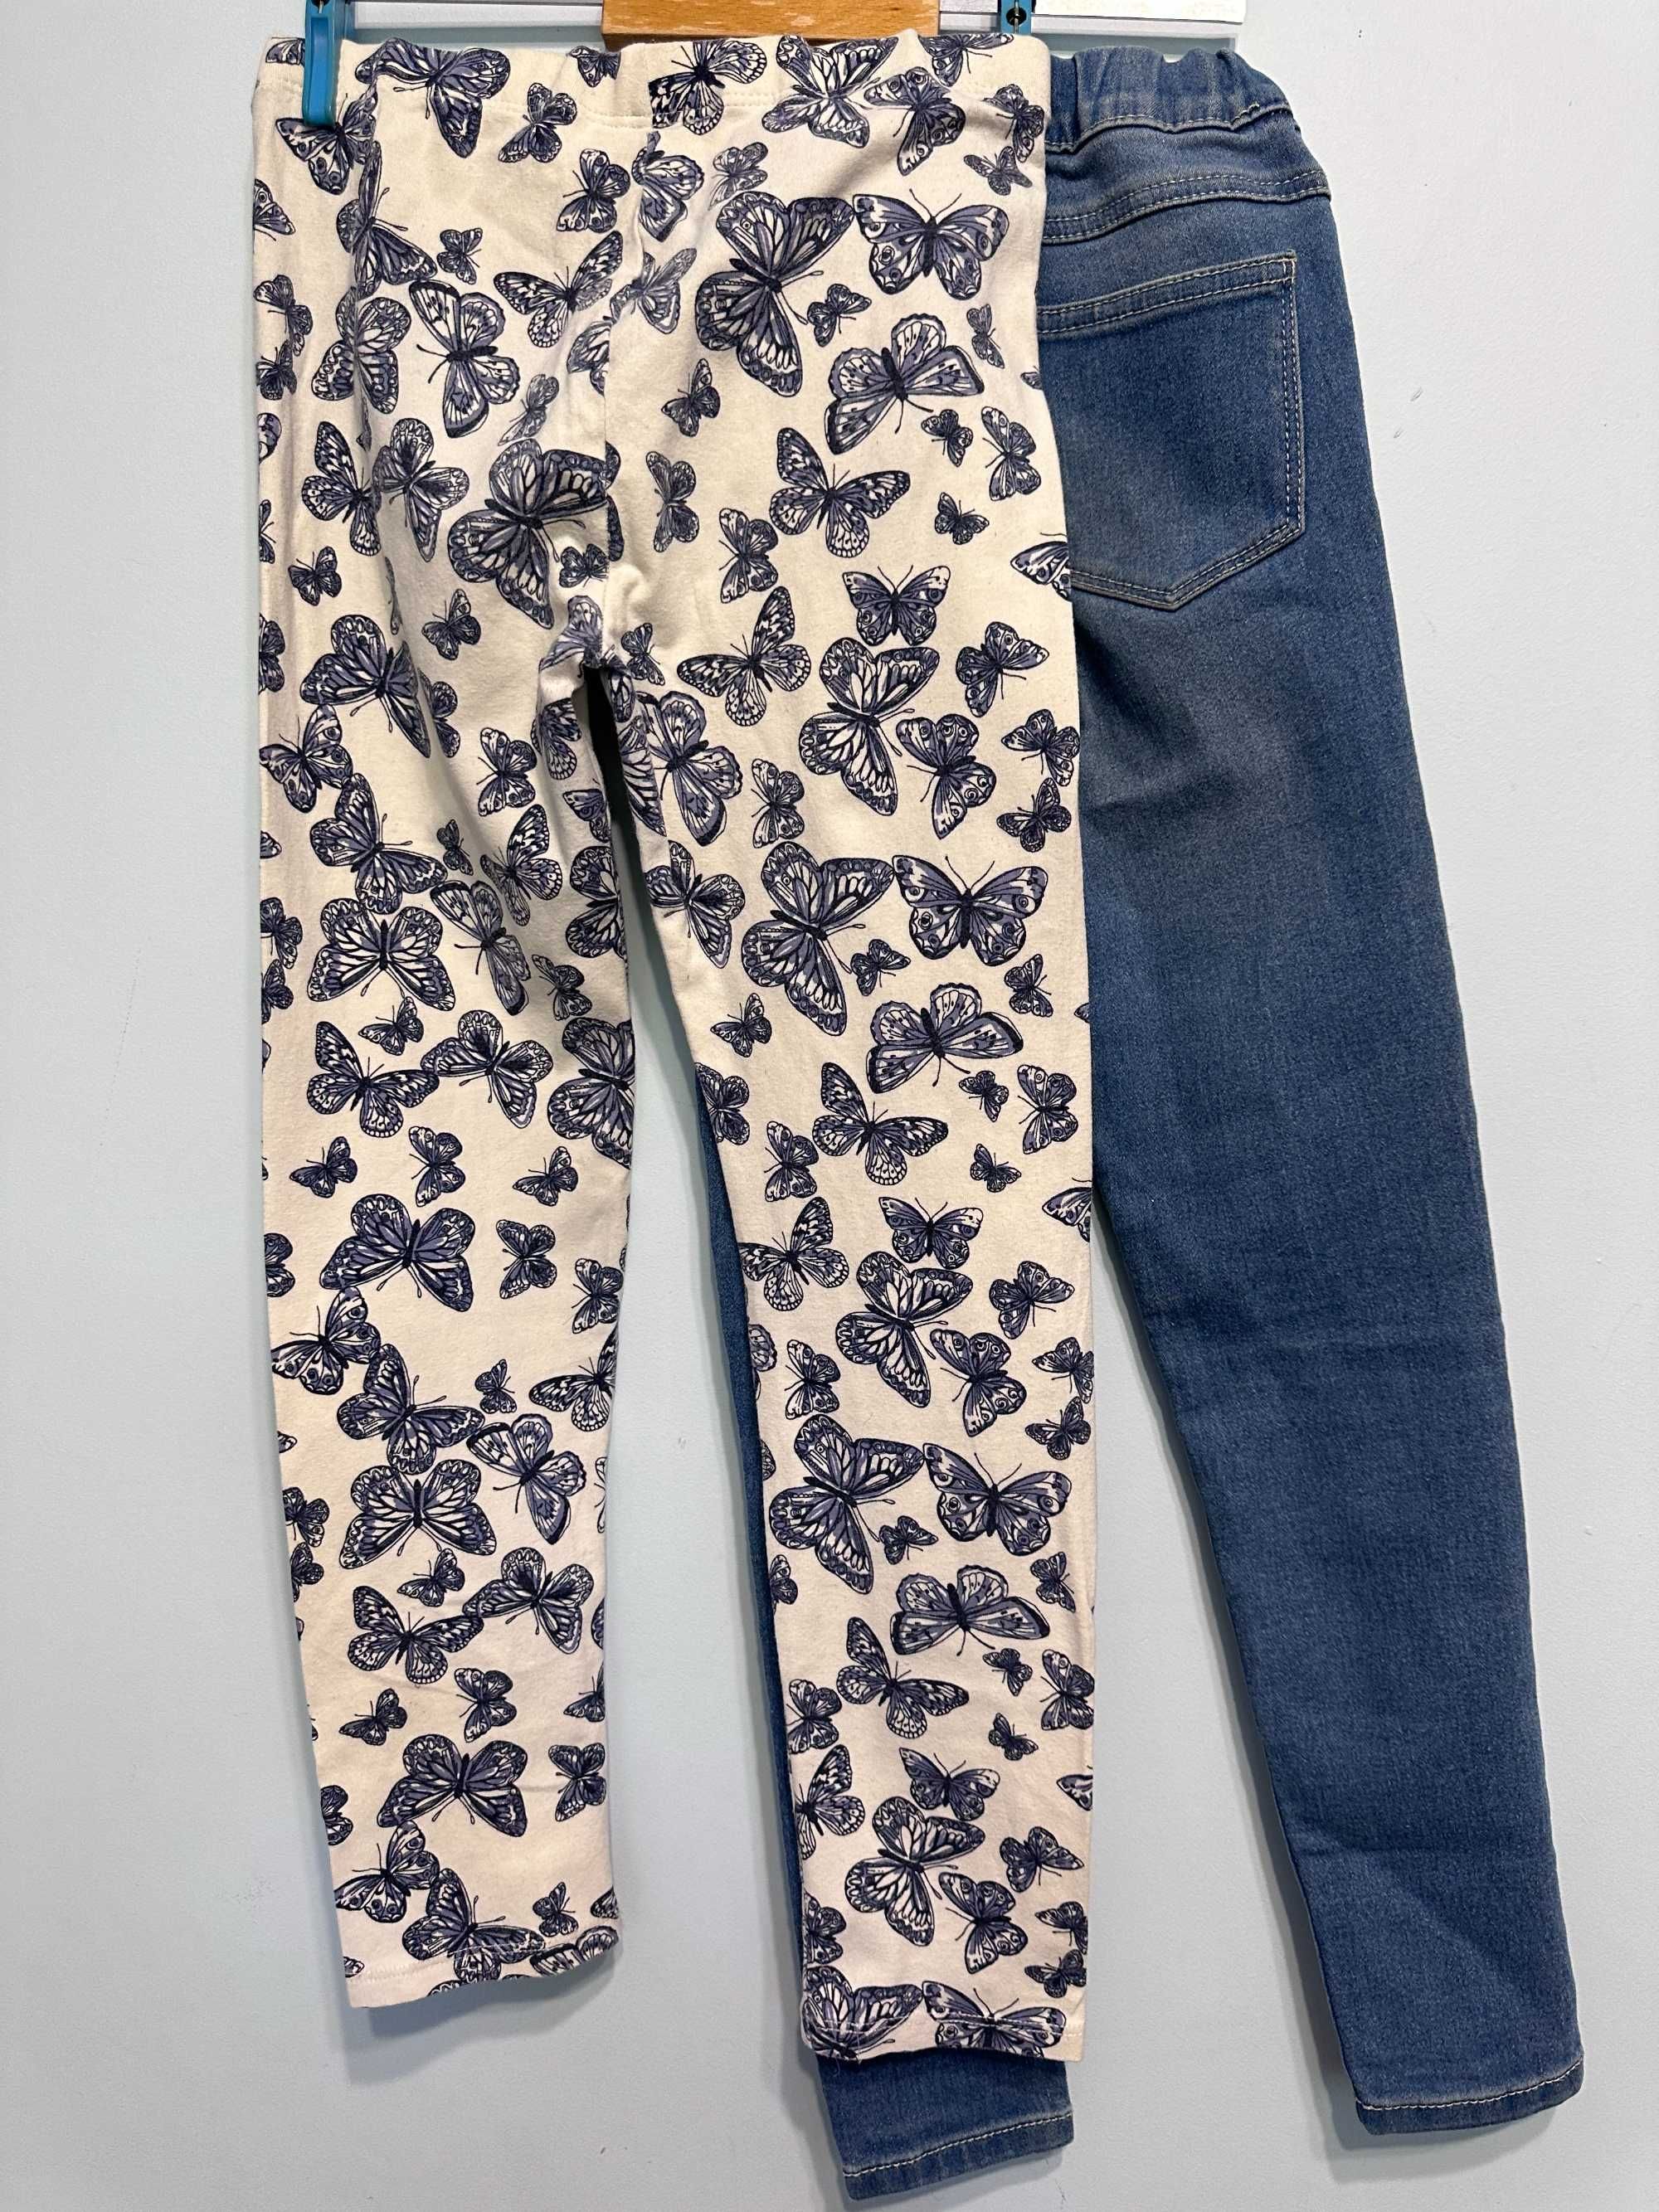 Лосини, джинси на дівчинку 9-10 років, 134 см